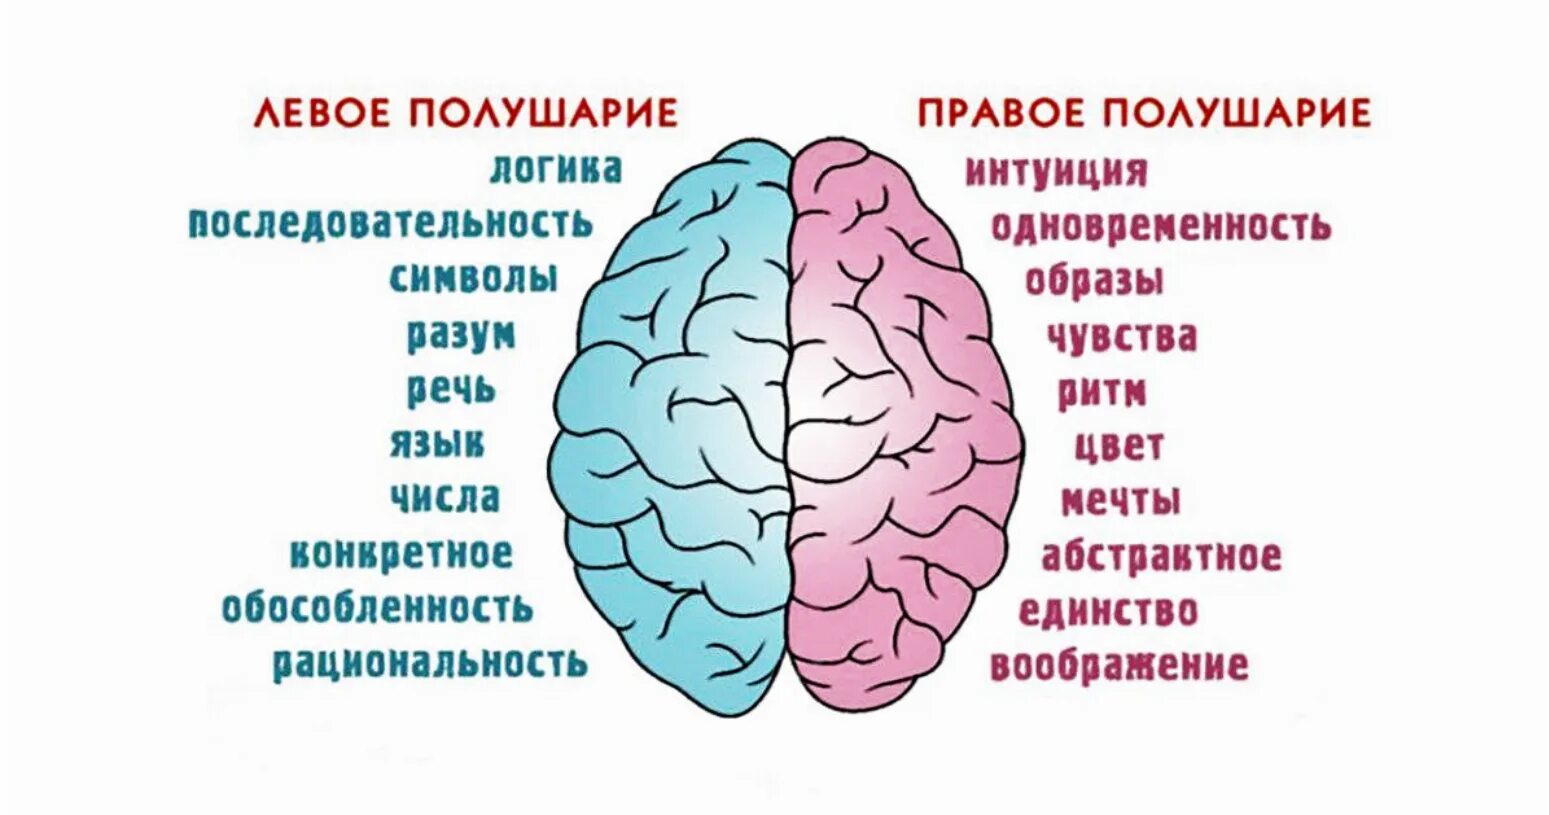 Что отвечает за действия человека. Полушария мозга девое т правое. За что отвечает правое полушарие. За что отвечают полушария головного мозга человека левое и правое. За какие процессы головного мозга отвечает правое полушарие.